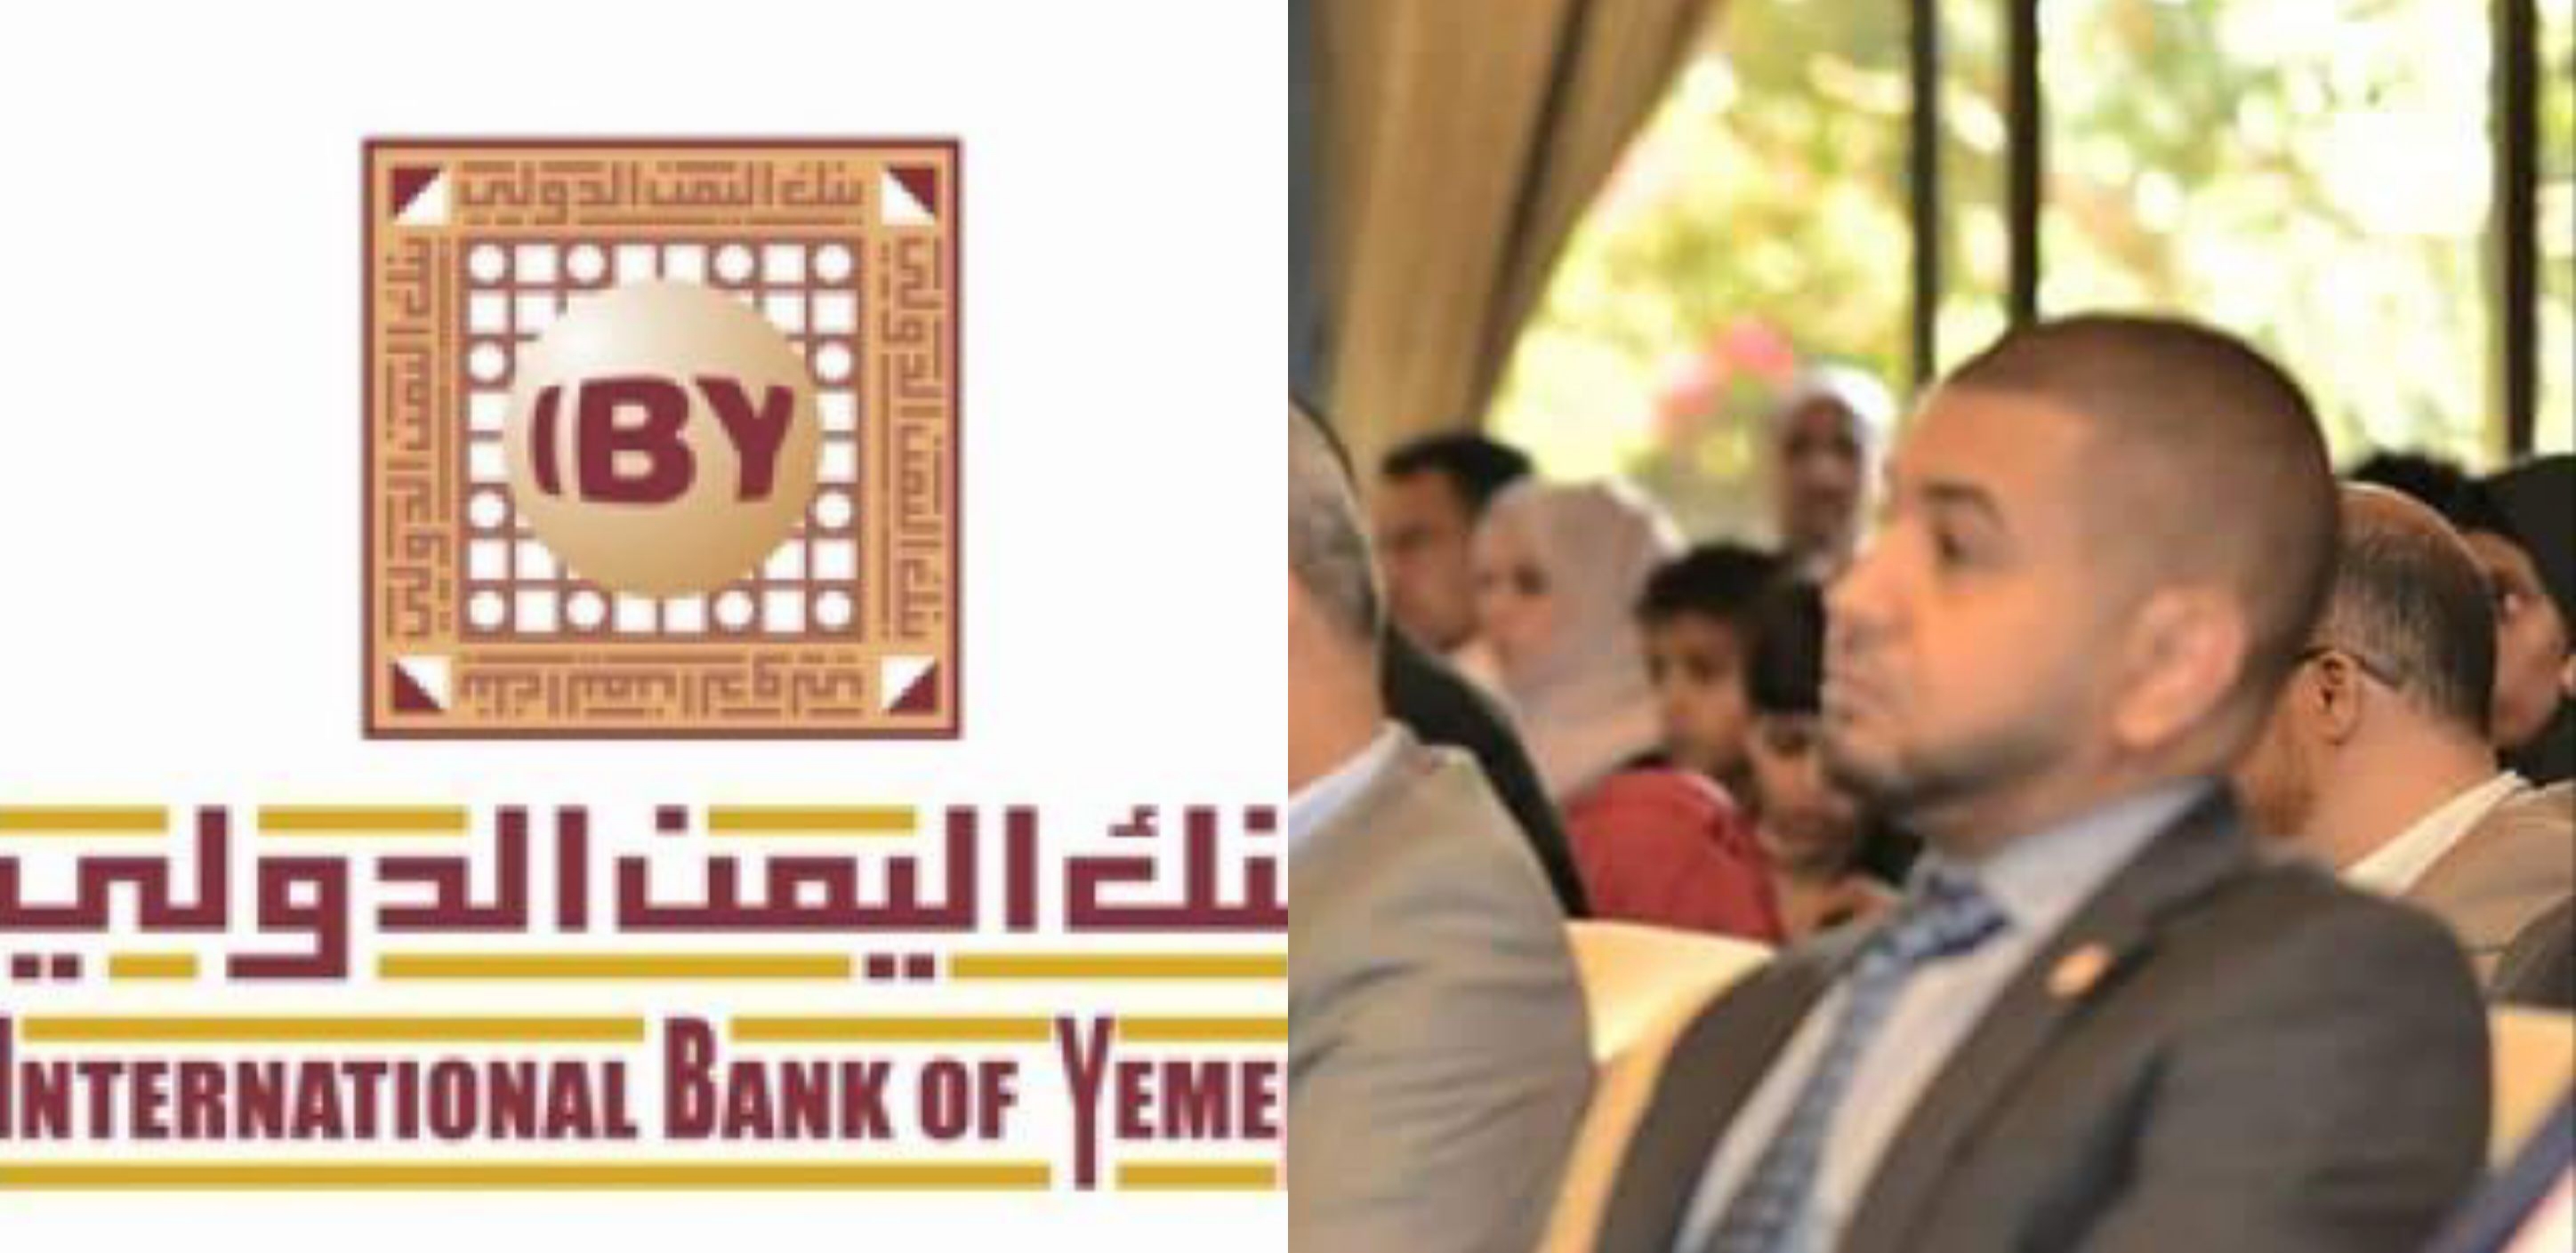 القبض على مدير بنك اليمن الدولي بصنعاء لتورطة بعمليات فساد ونصب واحتيالات وتلاعب بأرصدة العملاء والعملة وخبراء اقتصاد يحذرون البنك على وشك الانهيار